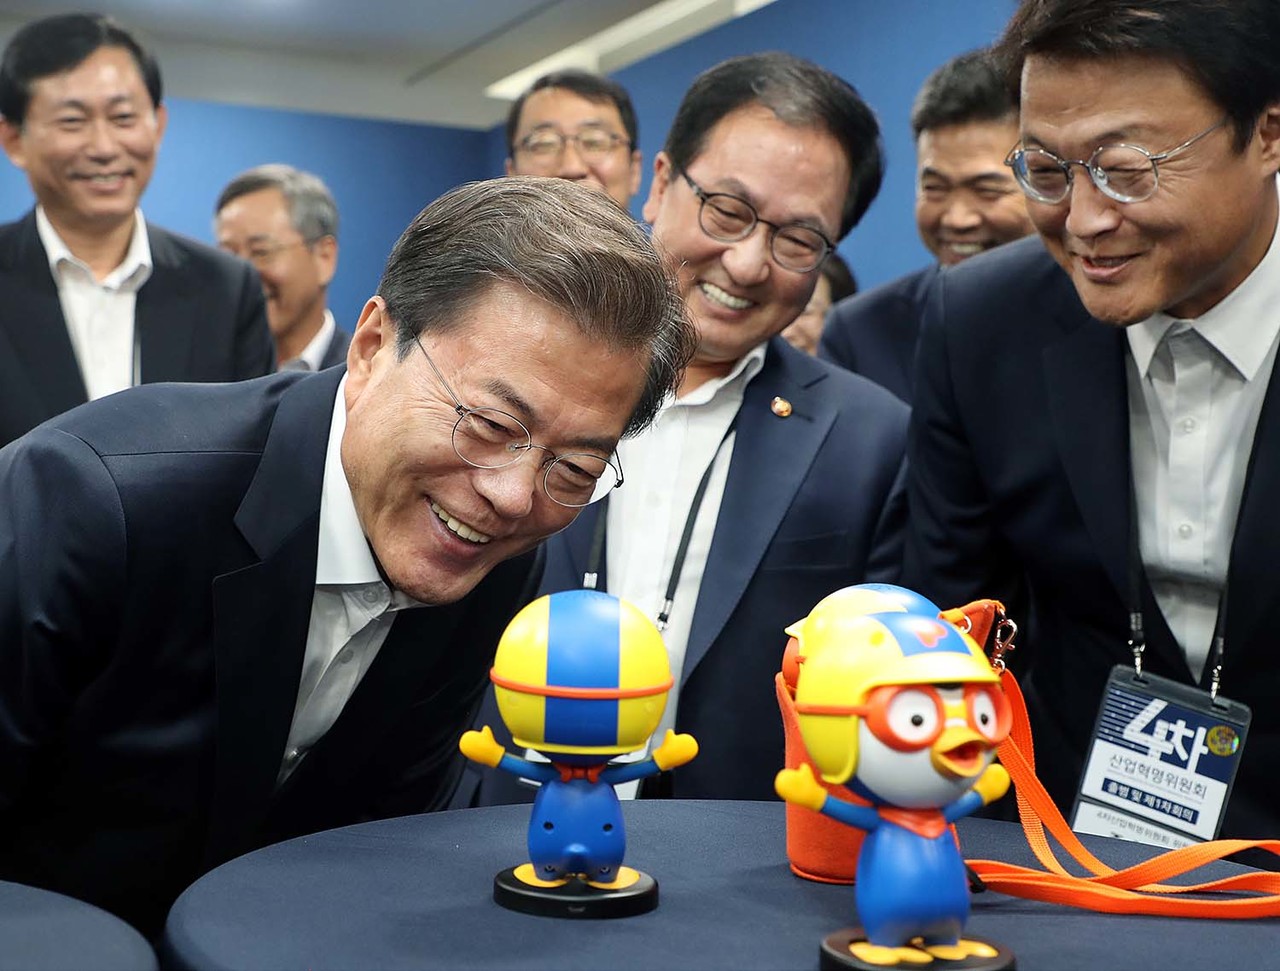 문재인 대통령이 지난 2017년 10월 11일 서울 상암동 에스플렉스센터에서 열린 4차산업혁명위원회 출범식 및 1차회의에 앞서 어린이들의 대통령으로 불리는 '뽀로로'의 인공지능(AI) 로봇 '뽀로롯'과 이야기를 나누고 있다. (사진=뉴스1 제공).